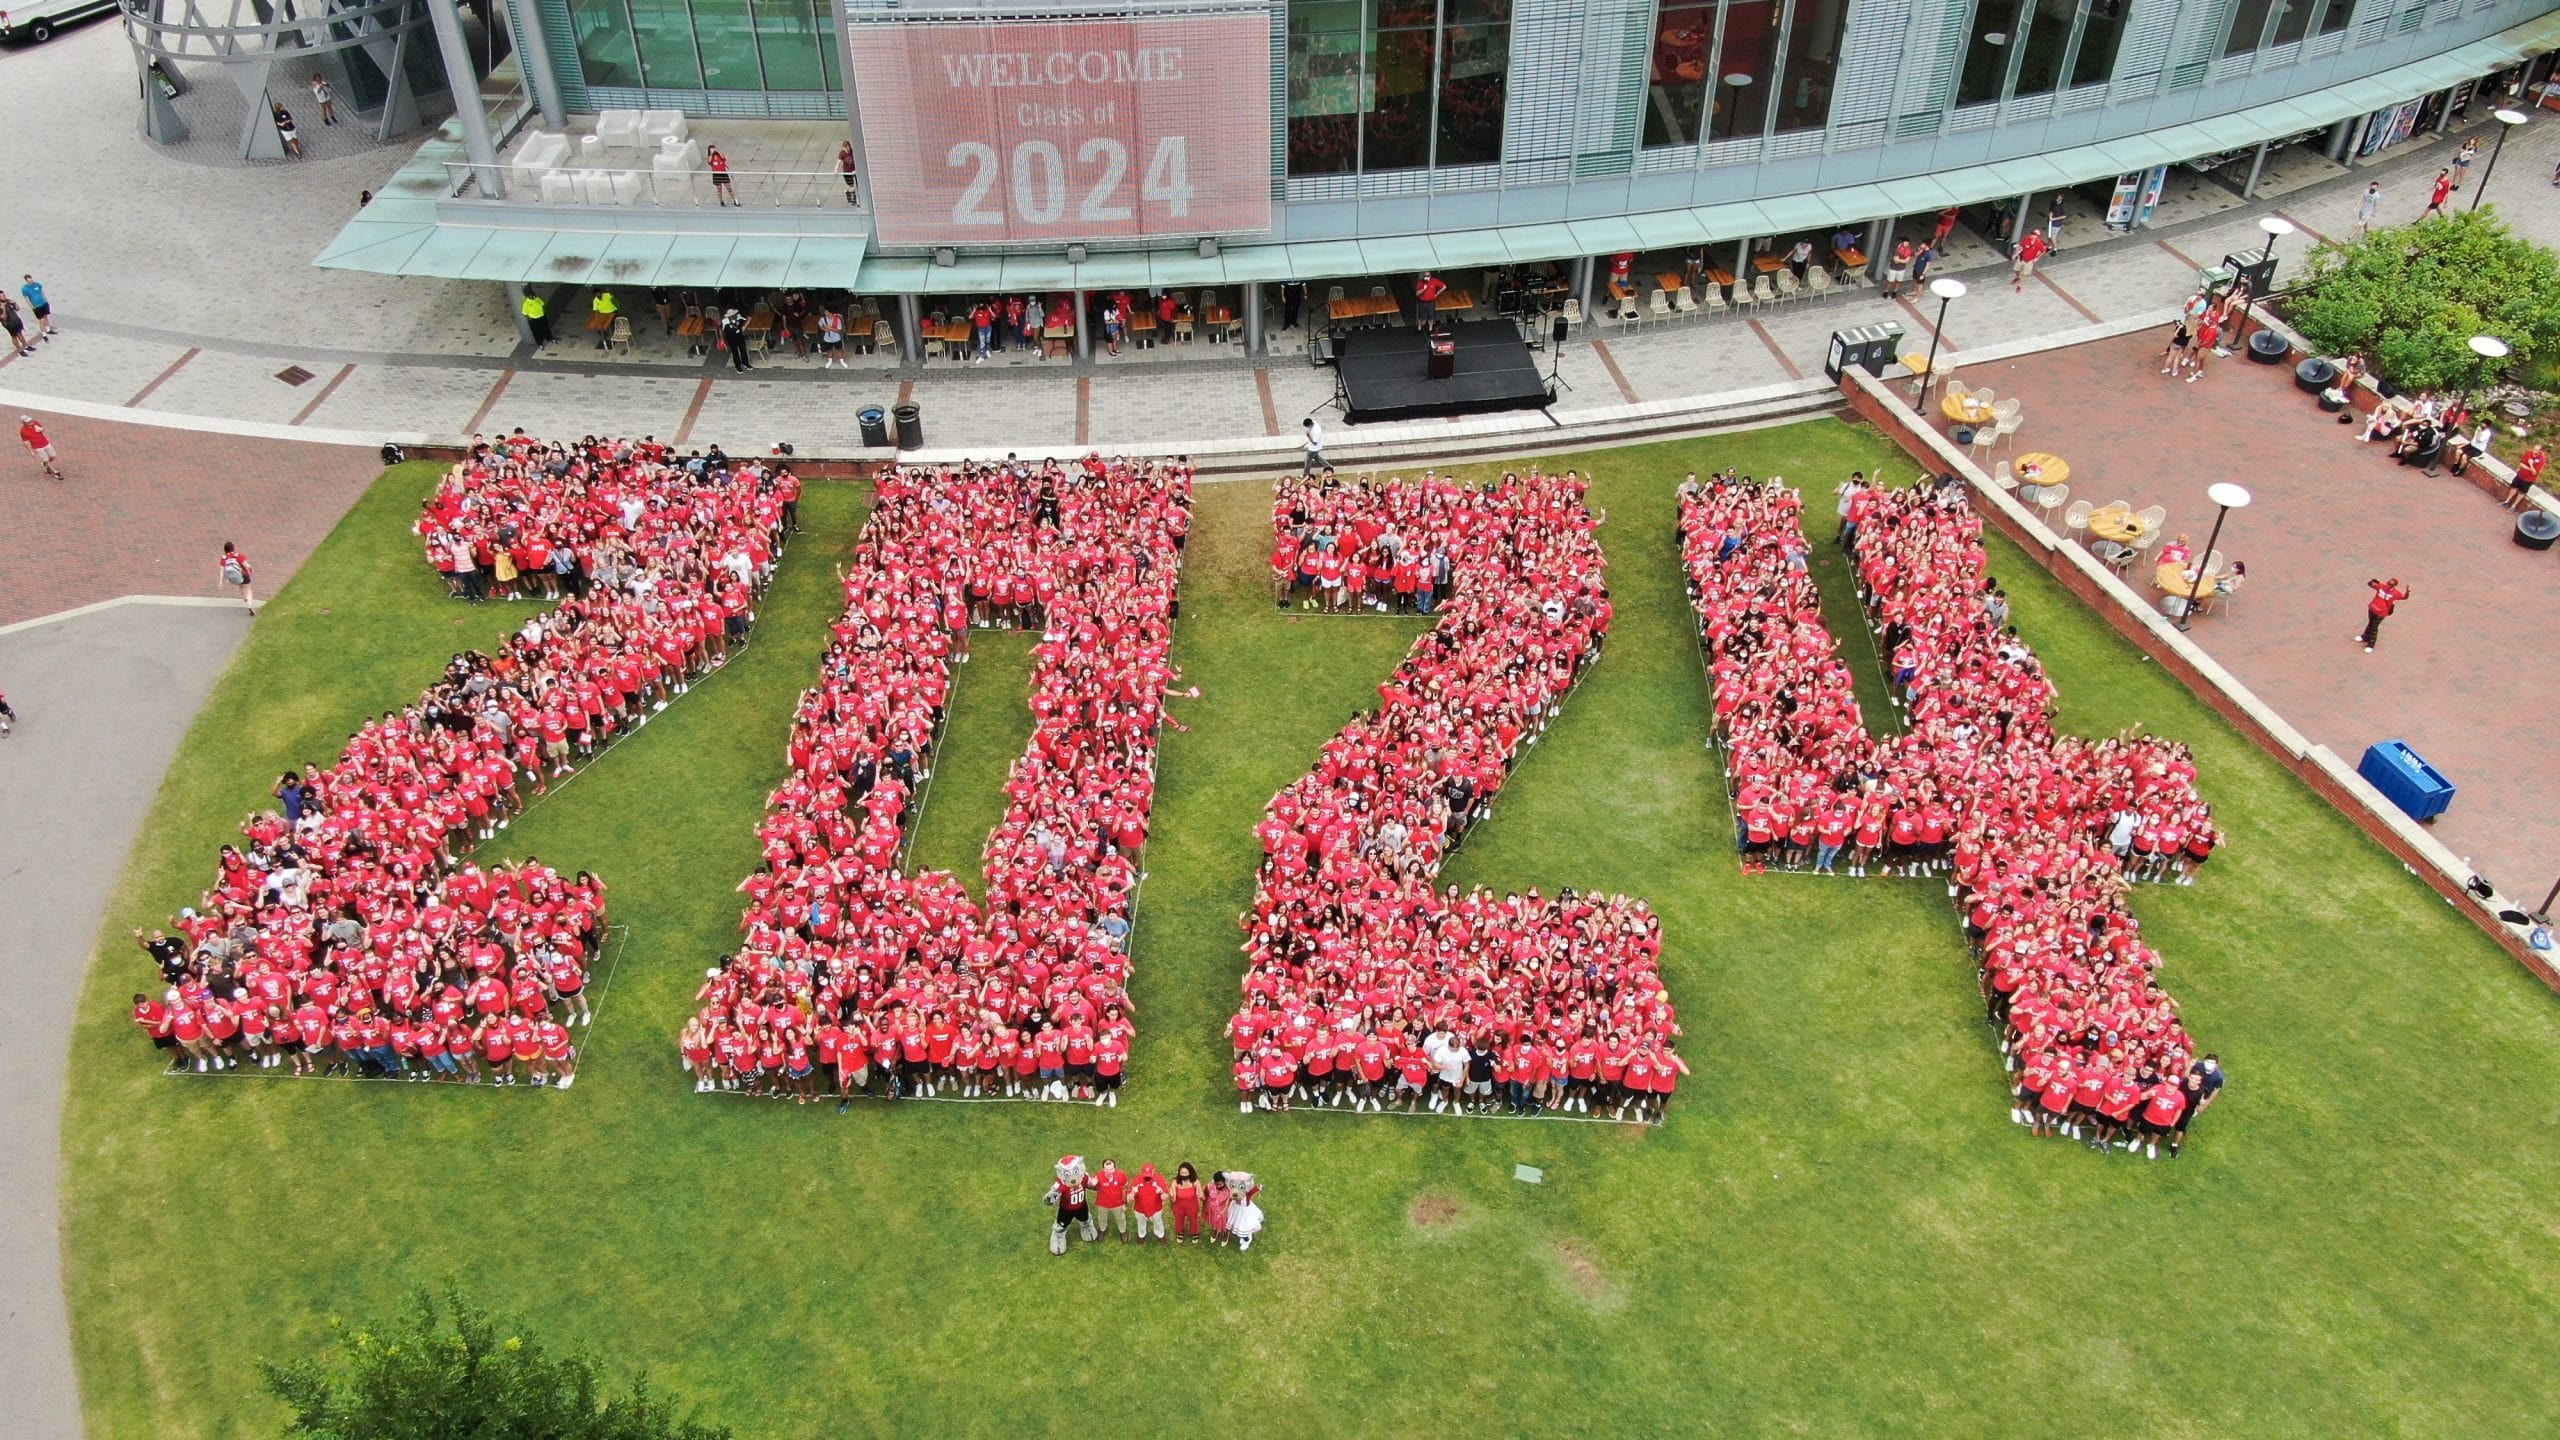 来自2024年级的学生的一张空中照片，形成了Stafford Commons的“2024”。